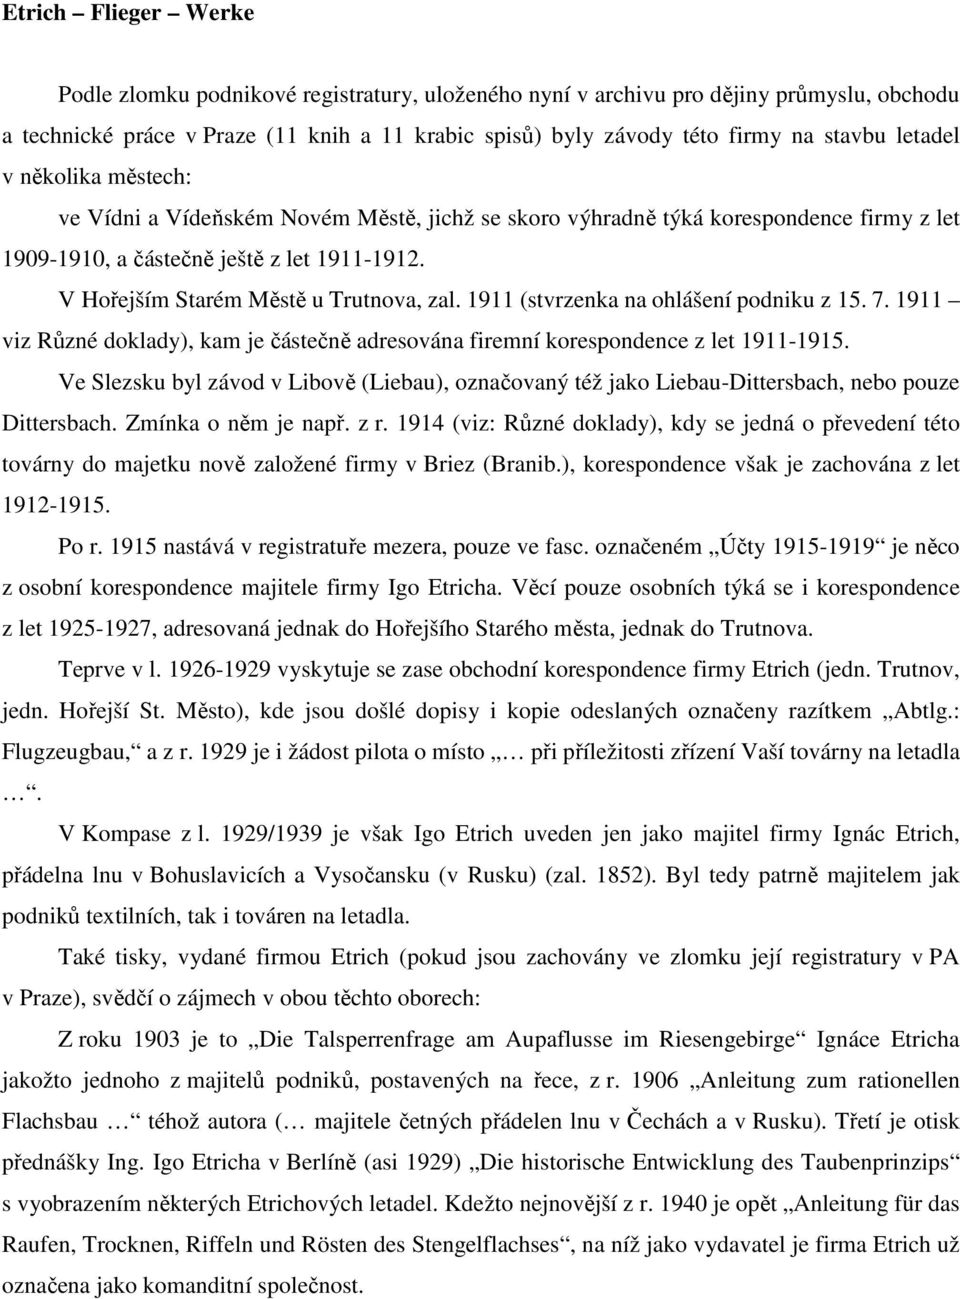 V Hořejším Starém Městě u Trutnova, zal. 1911 (stvrzenka na ohlášení podniku z 15. 7. 1911 viz Různé doklady), kam je částečně adresována firemní korespondence z let 1911-1915.